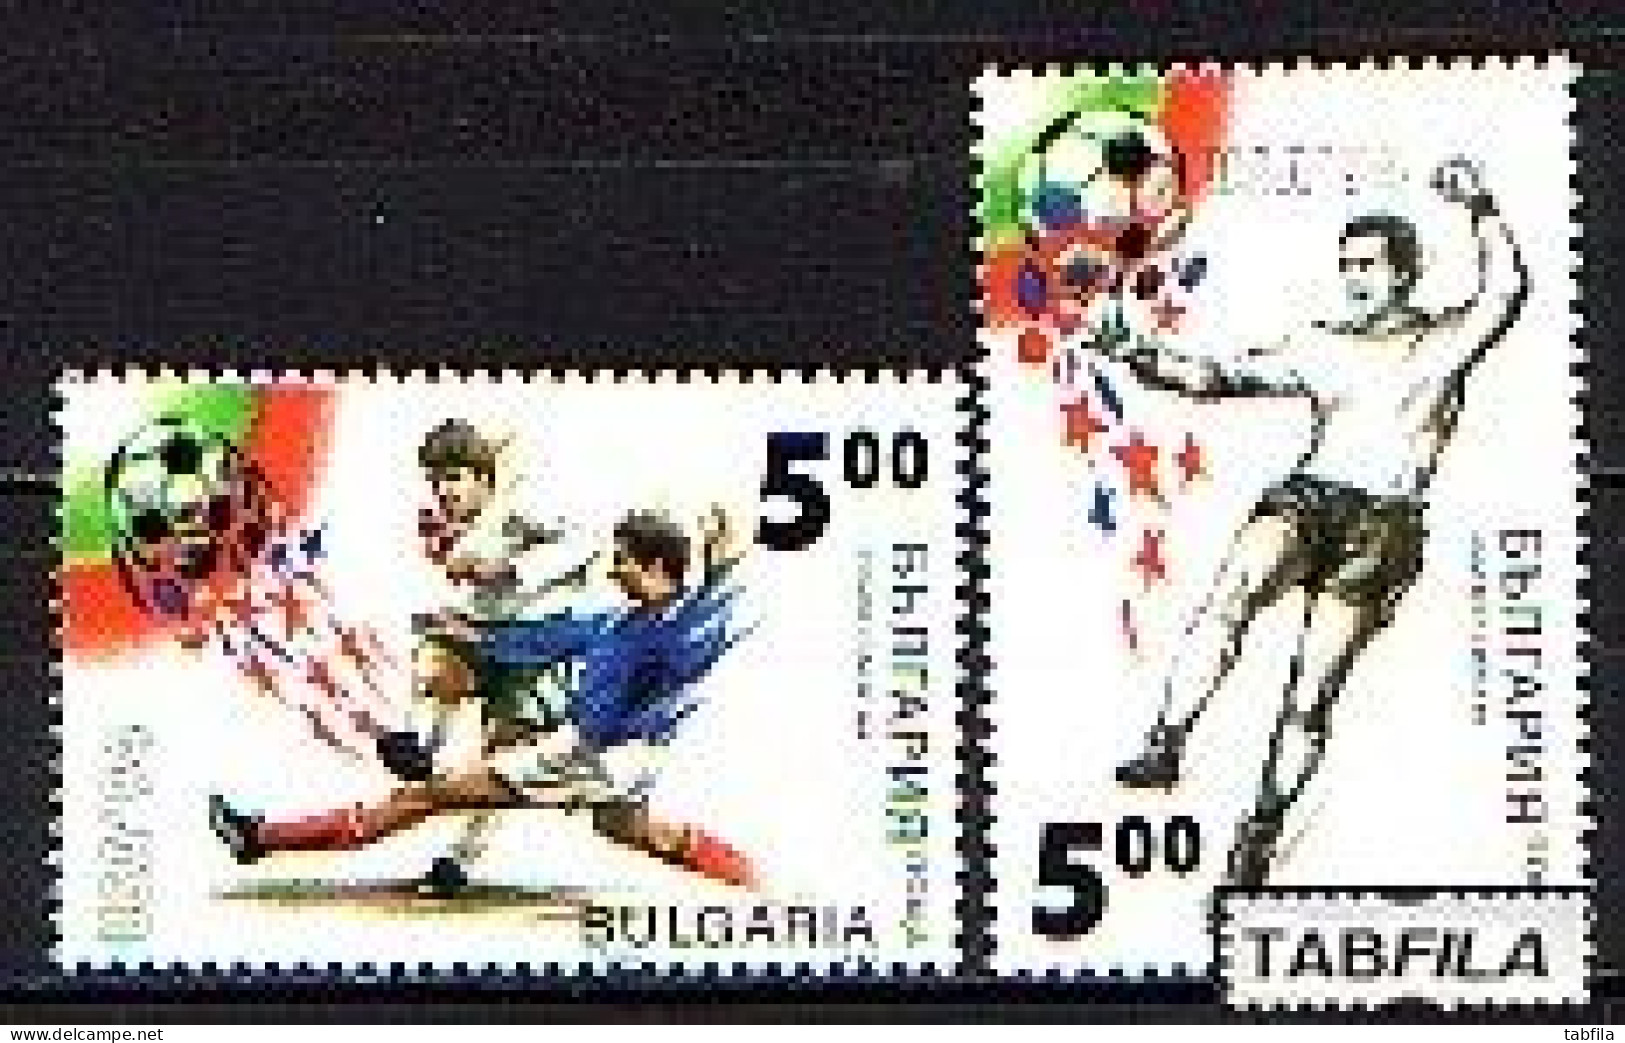 BULGARIA - 1994 - World Cup - USA - Mi 4119 / 20 -  MNH - 1994 – États-Unis